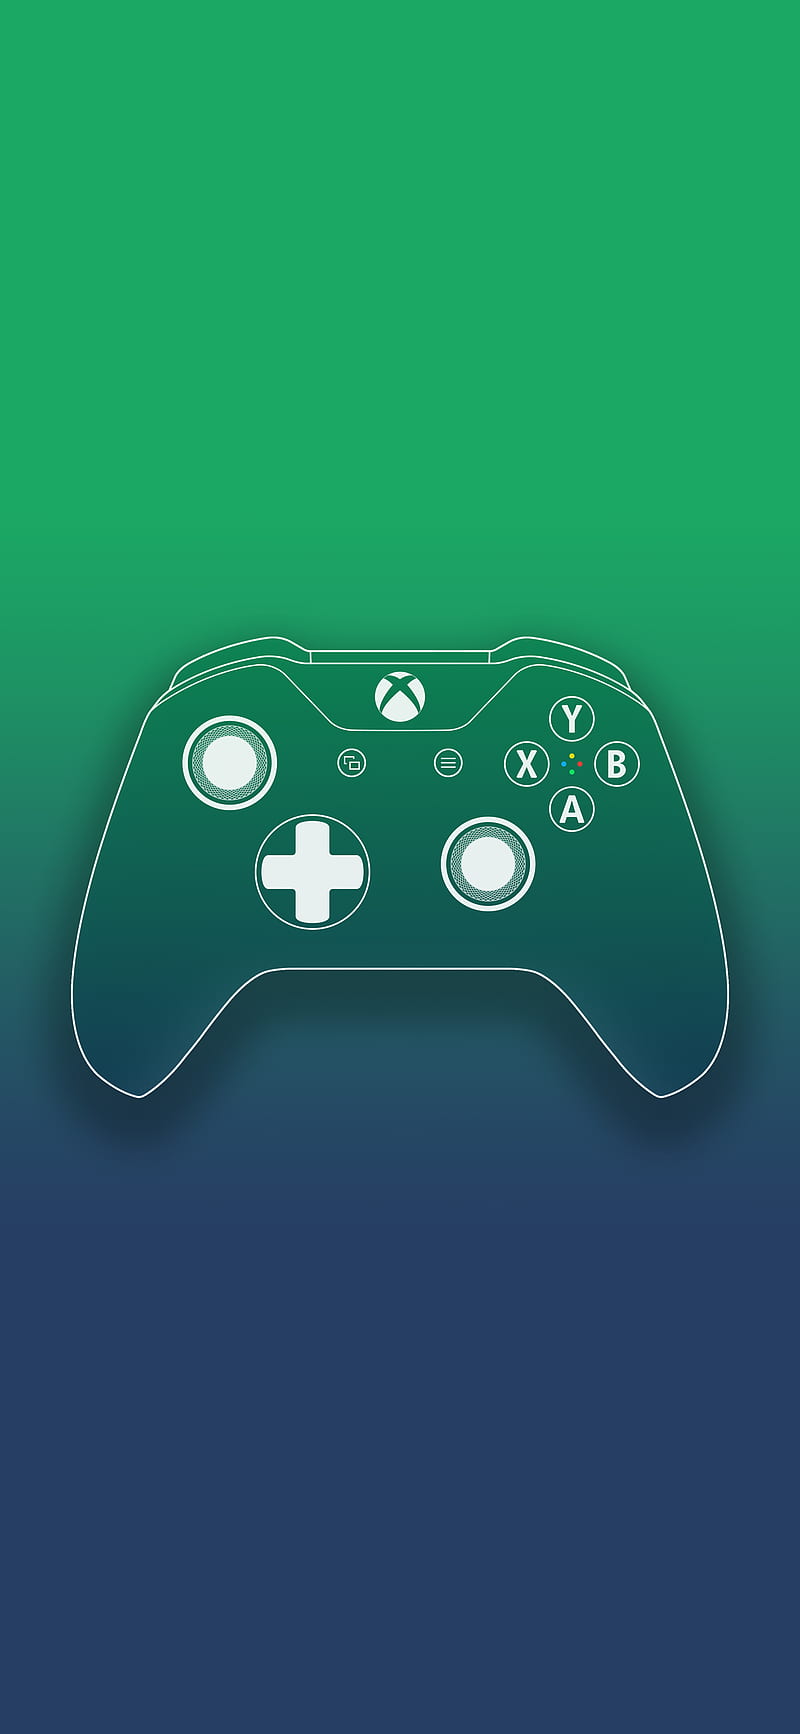 Xbox Controller: Điều gì làm nên trải nghiệm game hoàn hảo? Một chiếc Xbox Controller đương nhiên. Với thiết kế chắc chắn và nhiều tính năng thông minh, bạn sẽ có thể chiến thắng trong mọi trận đấu game. Nếu bạn muốn trải nghiệm các game đỉnh cao, hãy trang bị cho mình một chiếc Xbox Controller.